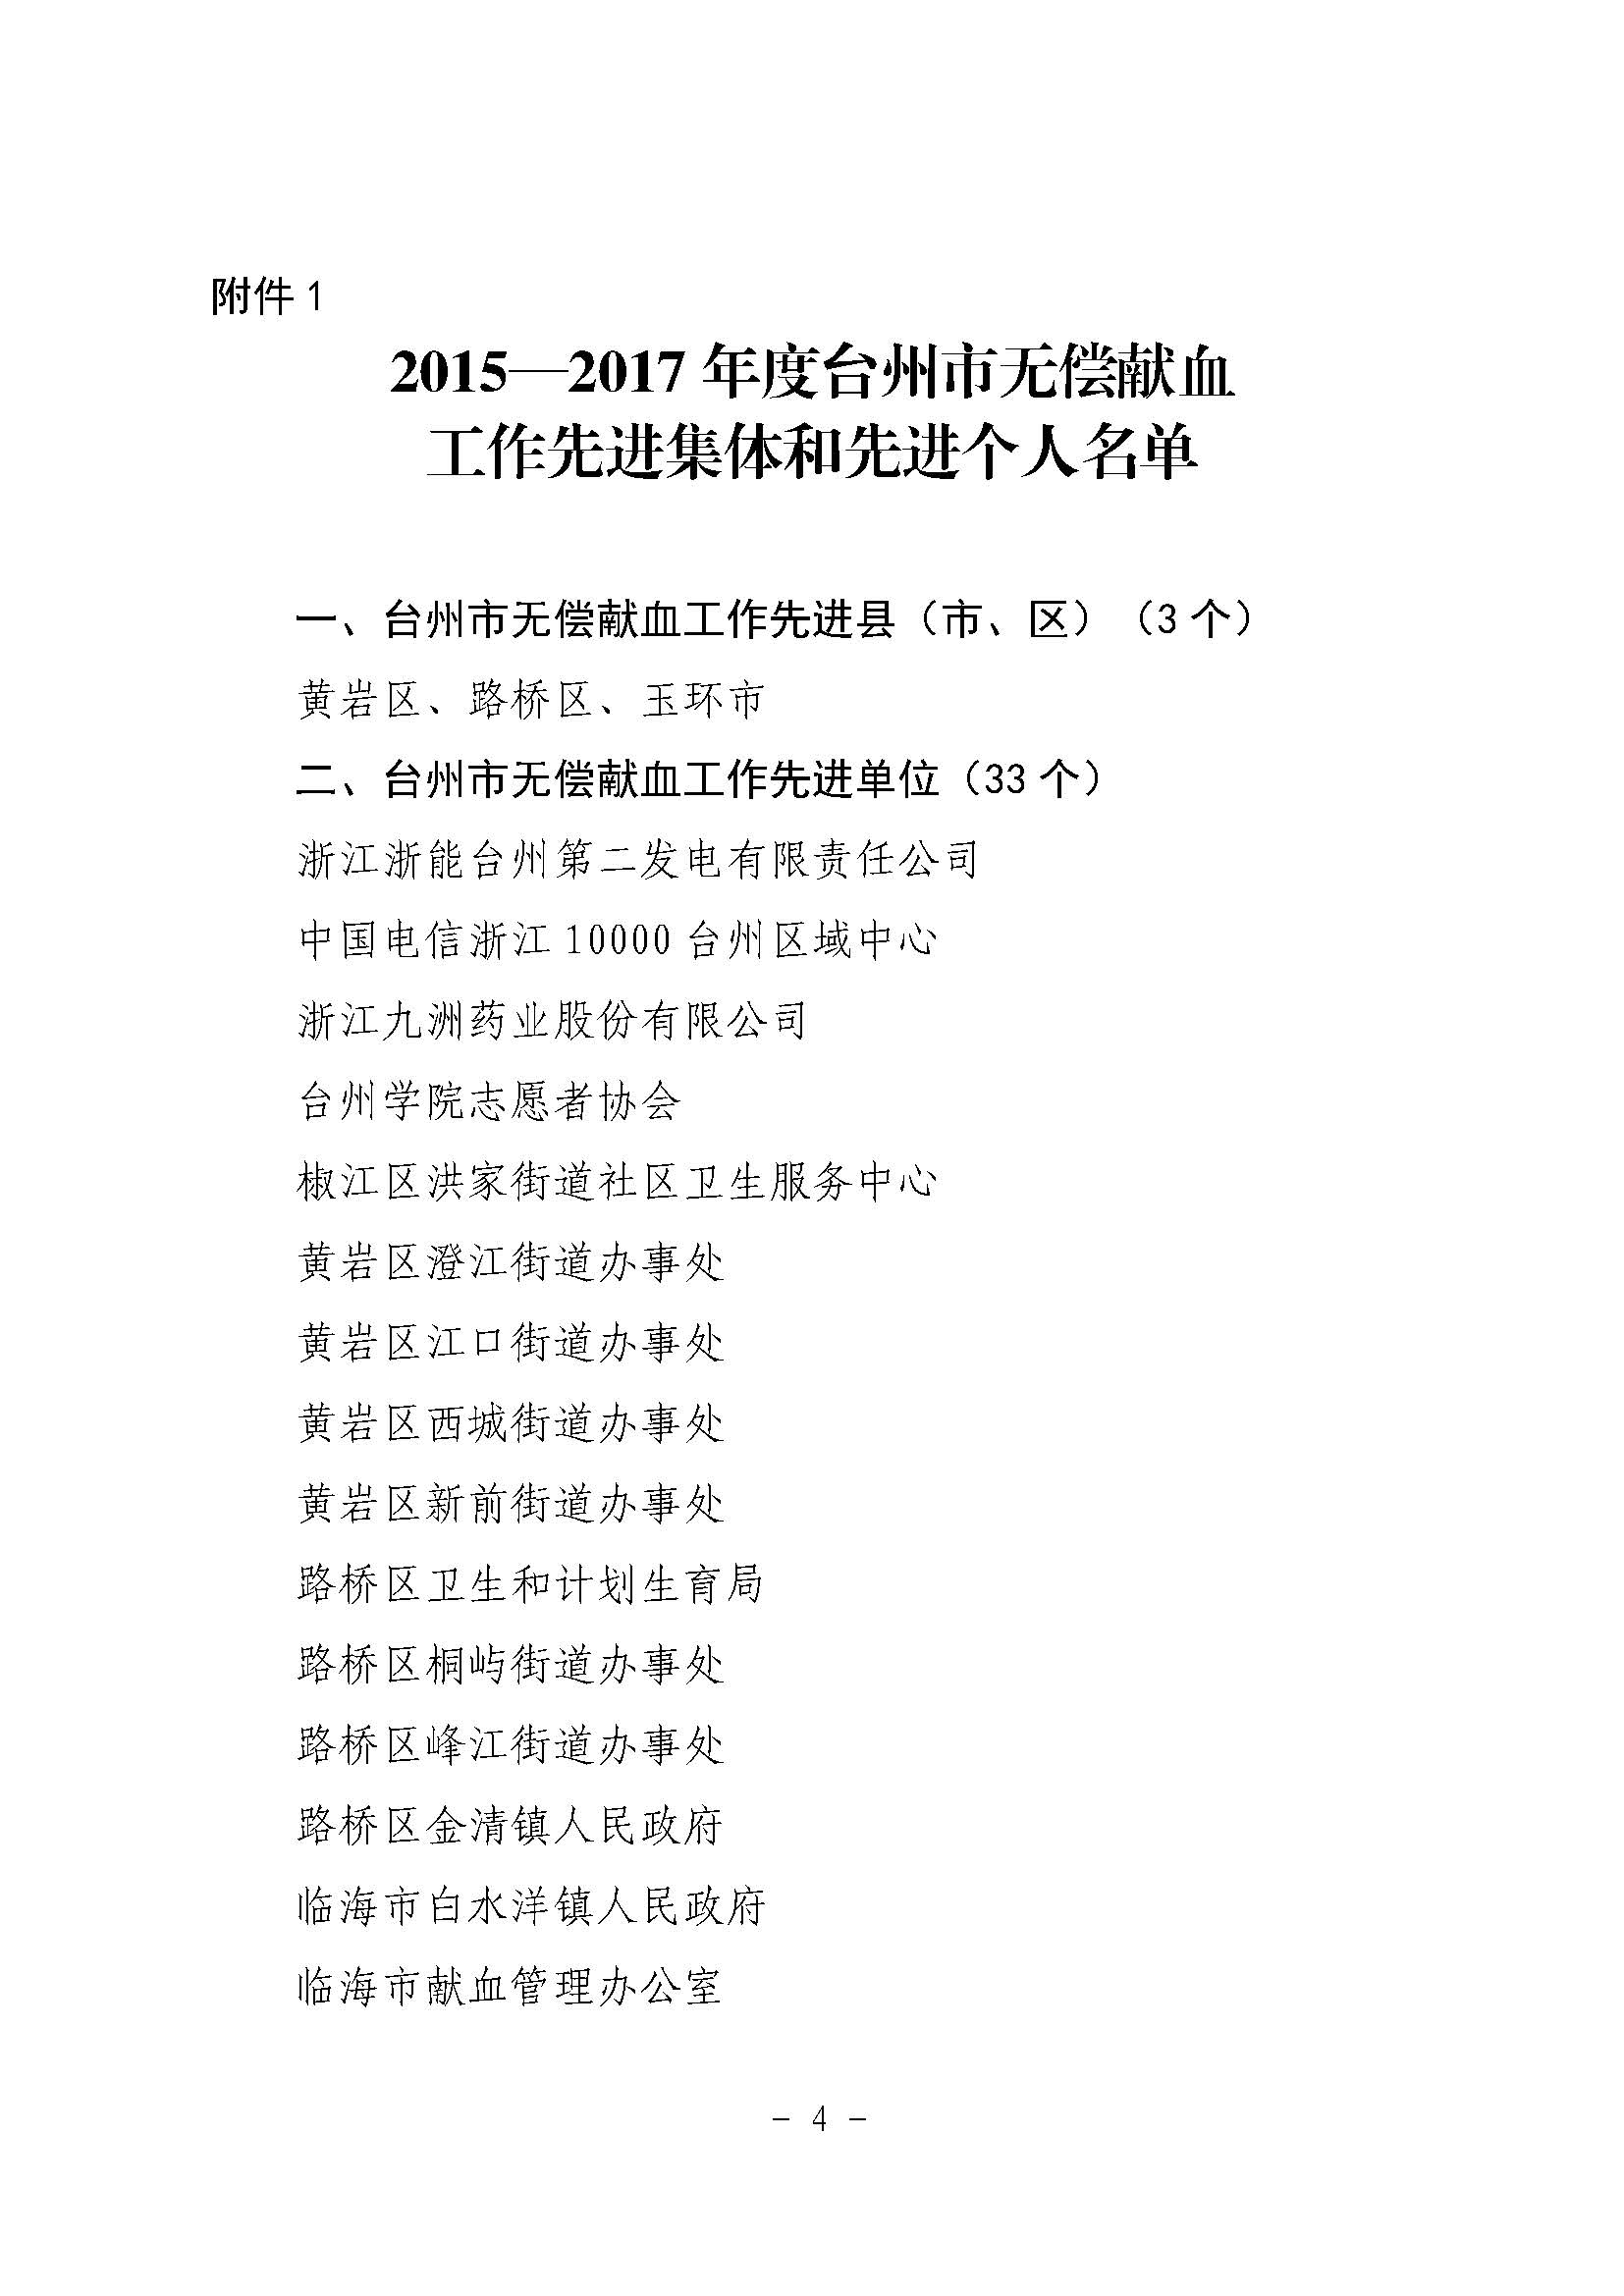 台献血字〔2018〕3号关于表扬2015—2017年度台州市无偿献血工作先进的通报（文件头）_页面_04.jpg